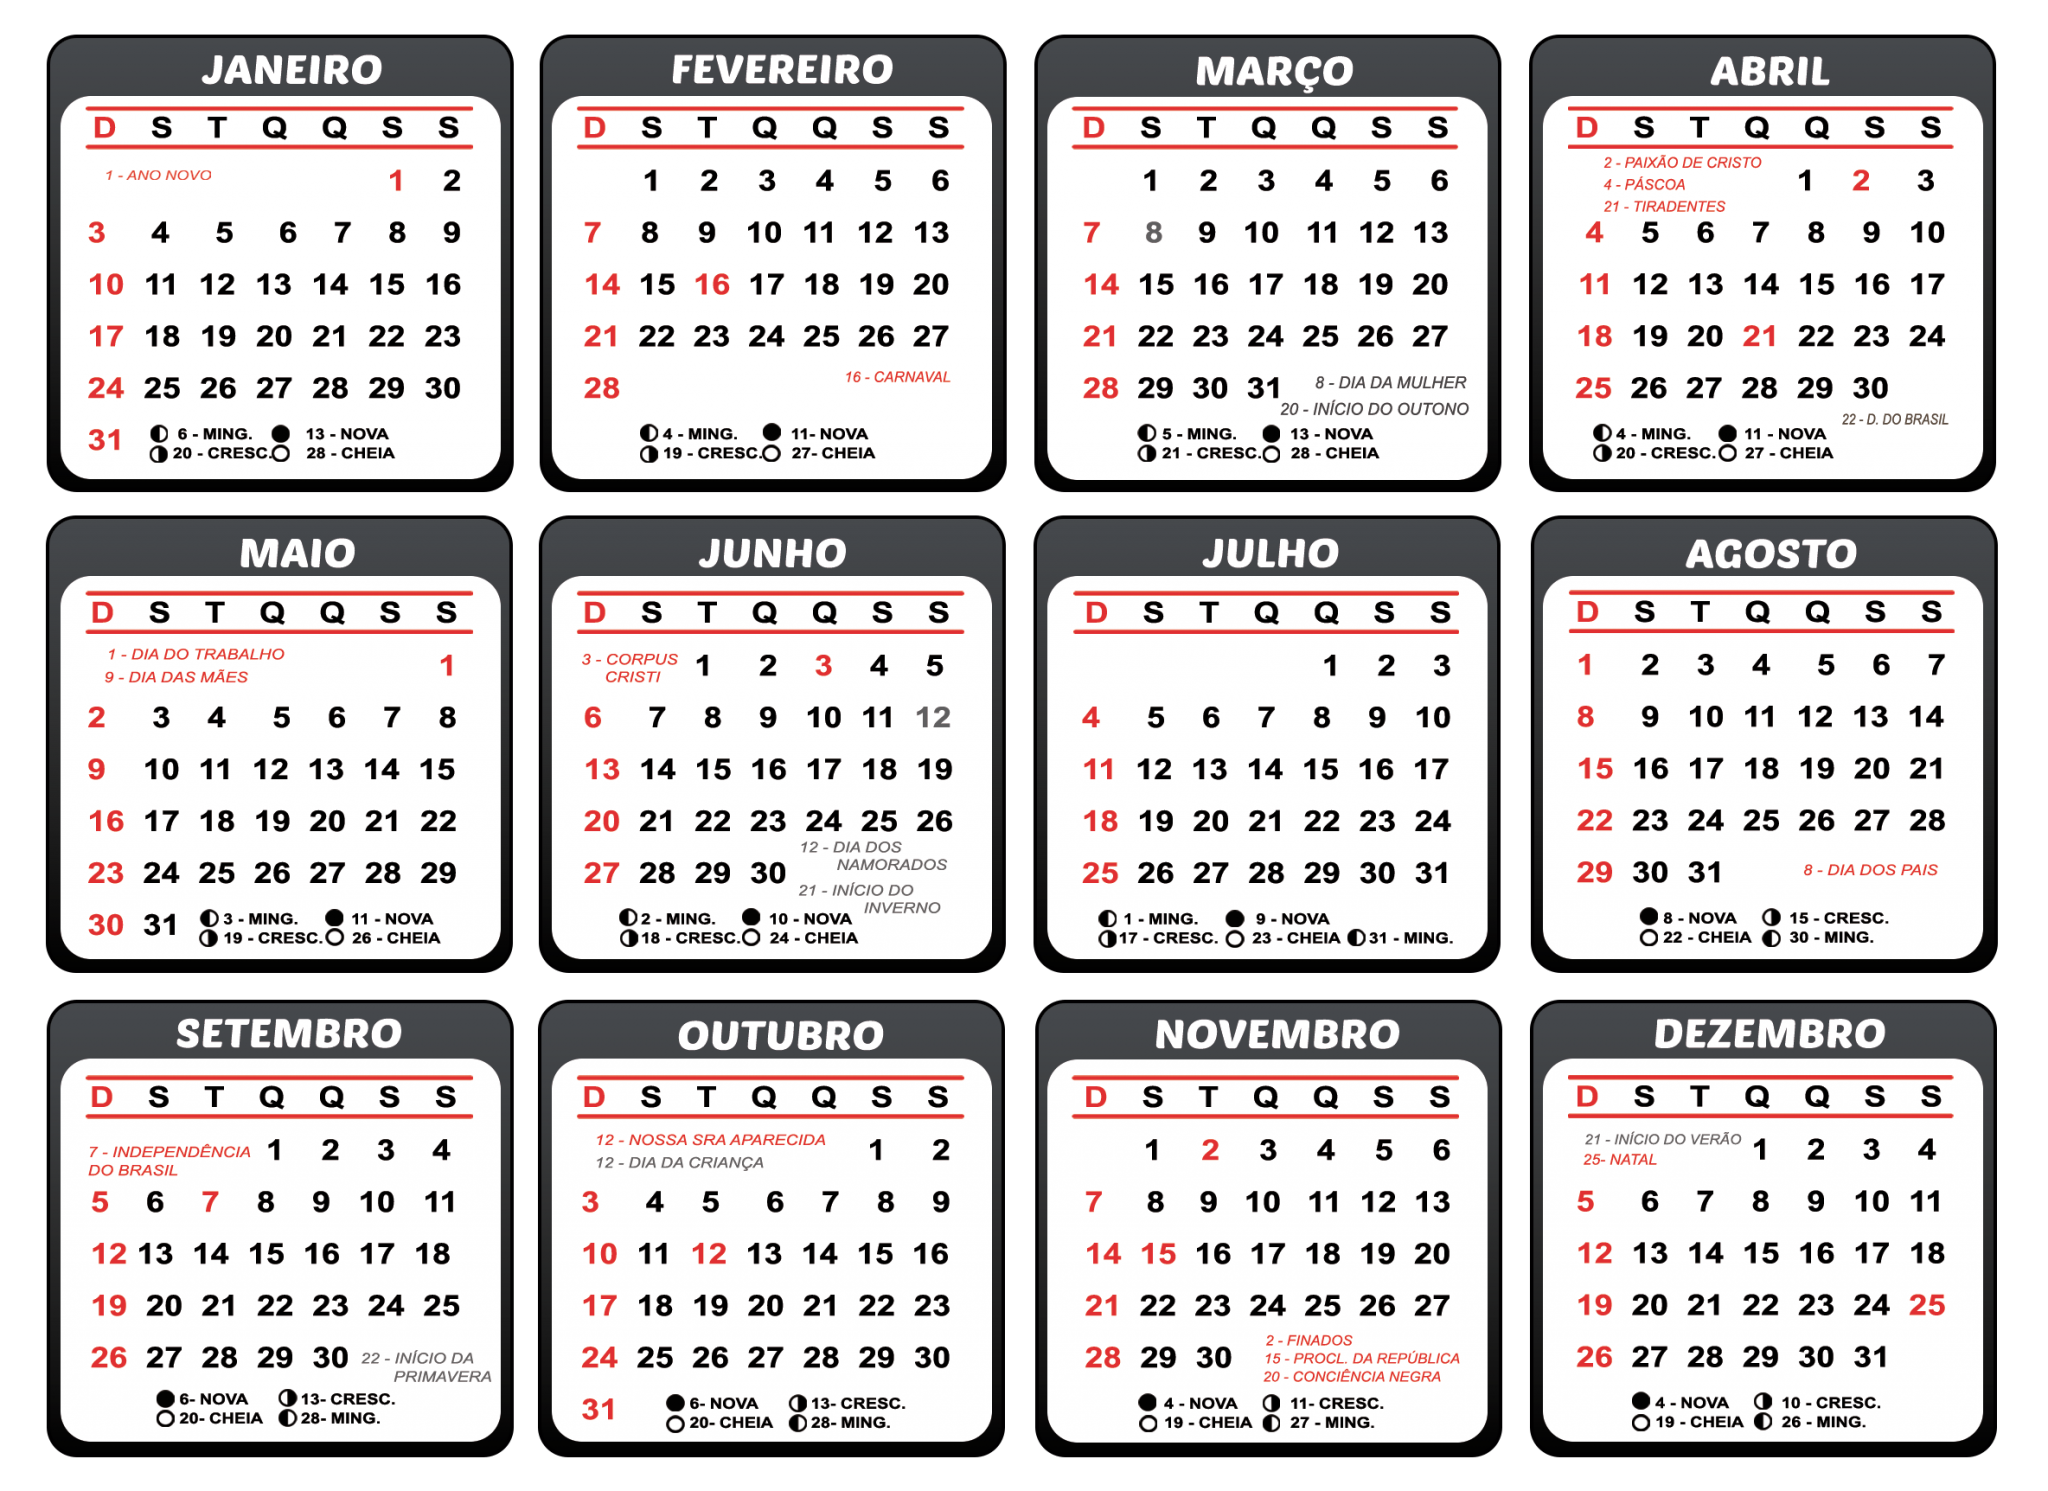 Calendario Imprimir 2021